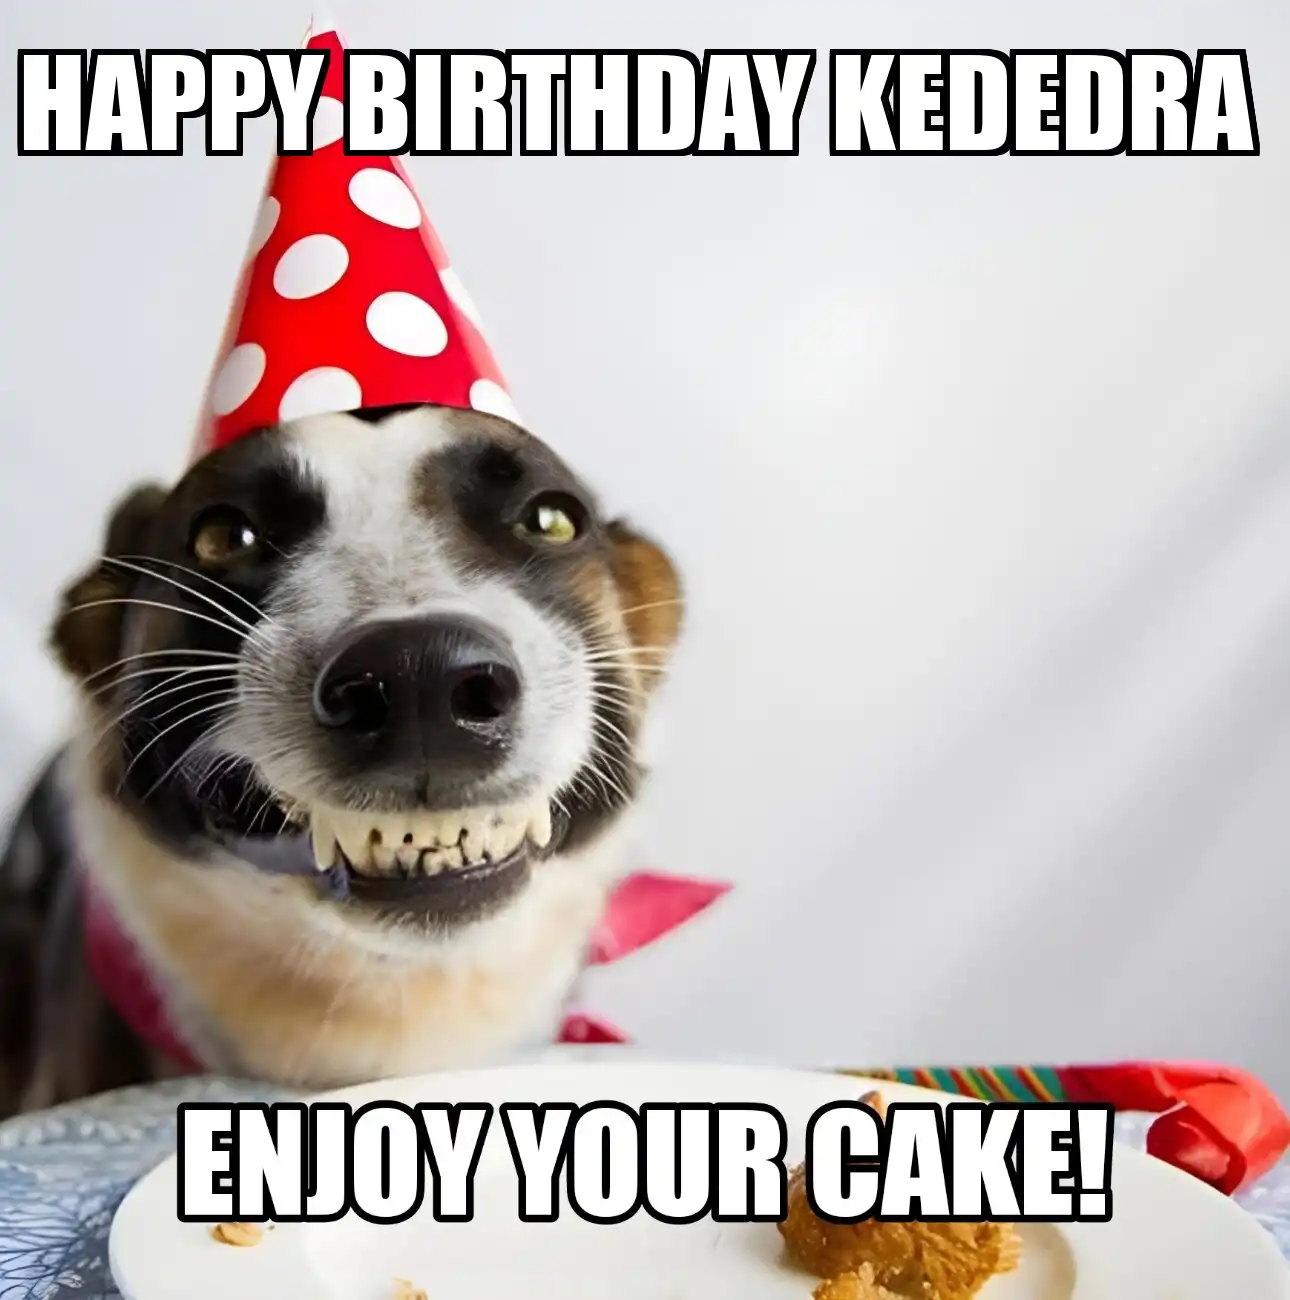 Happy Birthday Kededra Enjoy Your Cake Dog Meme